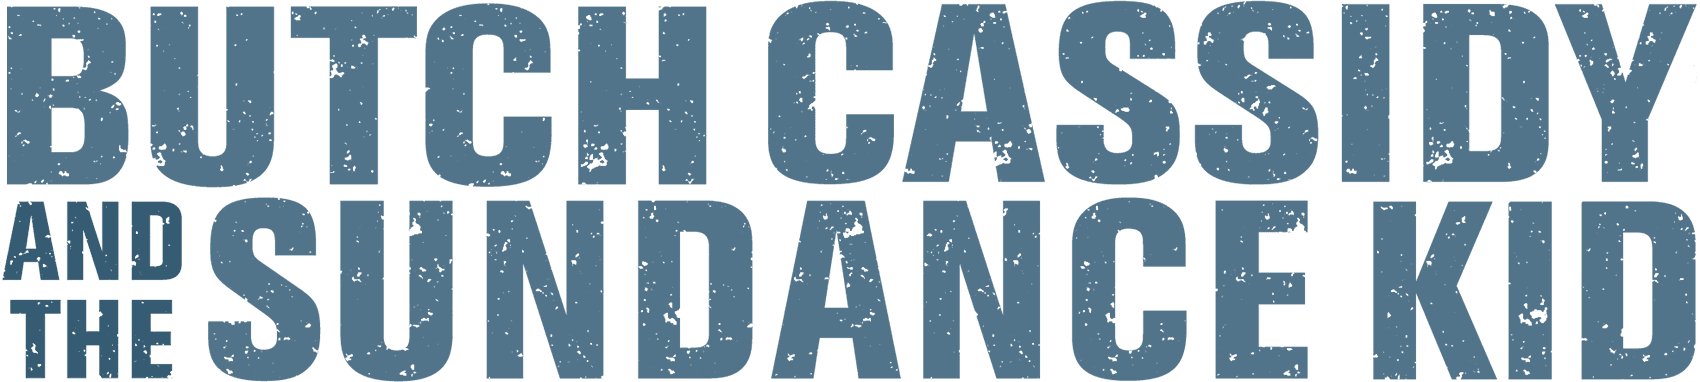 Butch Cassidy and the Sundance Kid logo